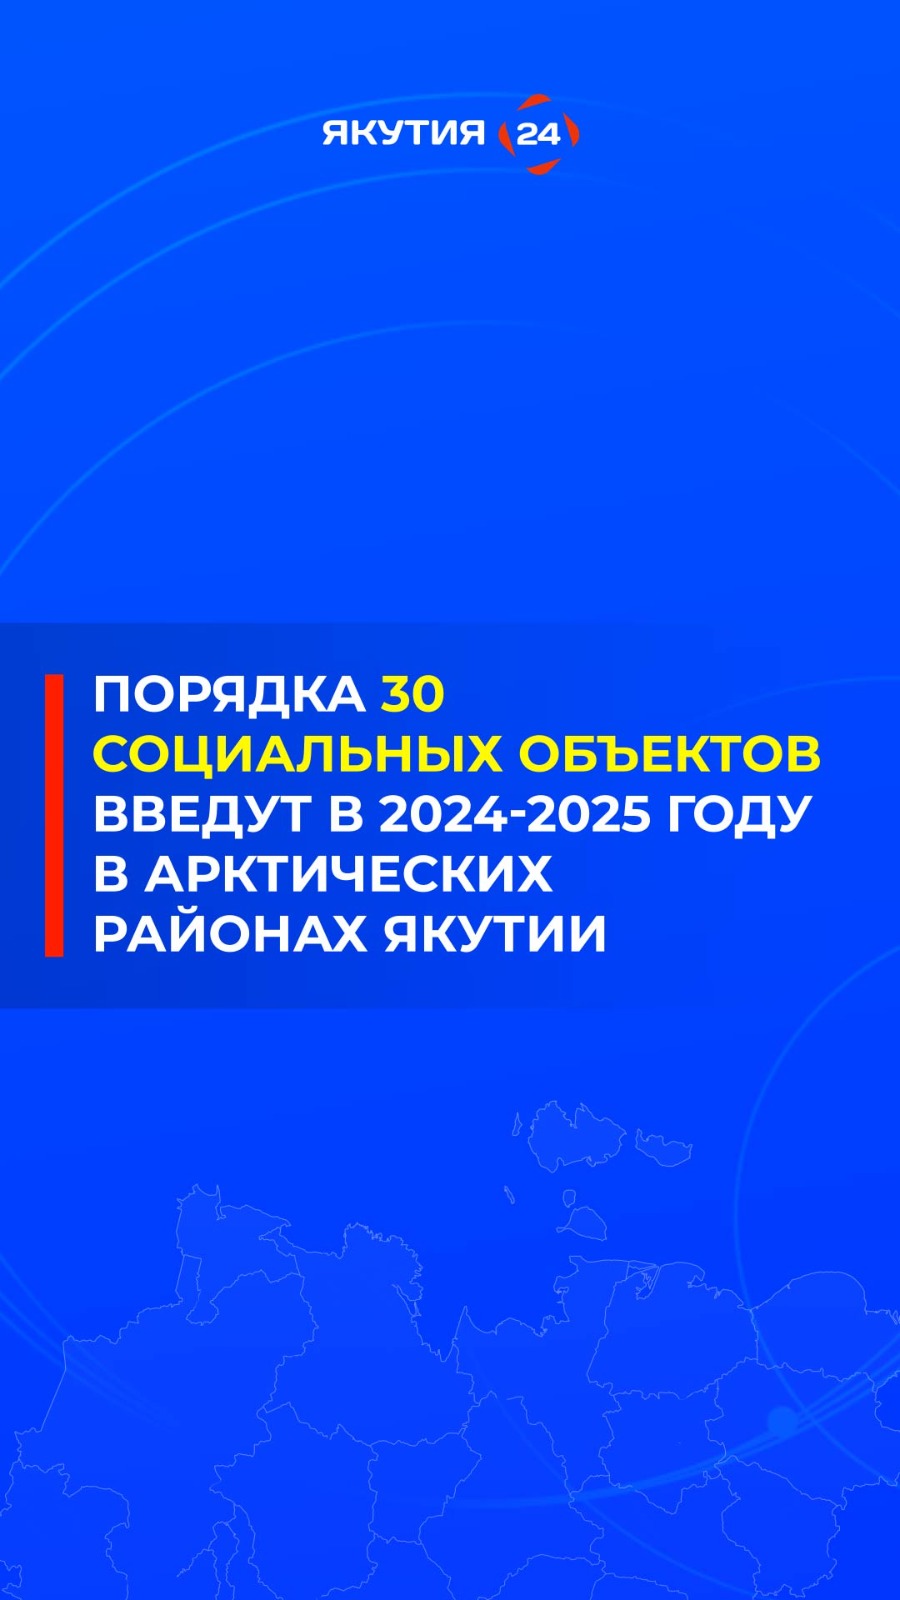 Порядка 30 социальных объектов введут в арктических районах Якутии в 2024-2025 гг